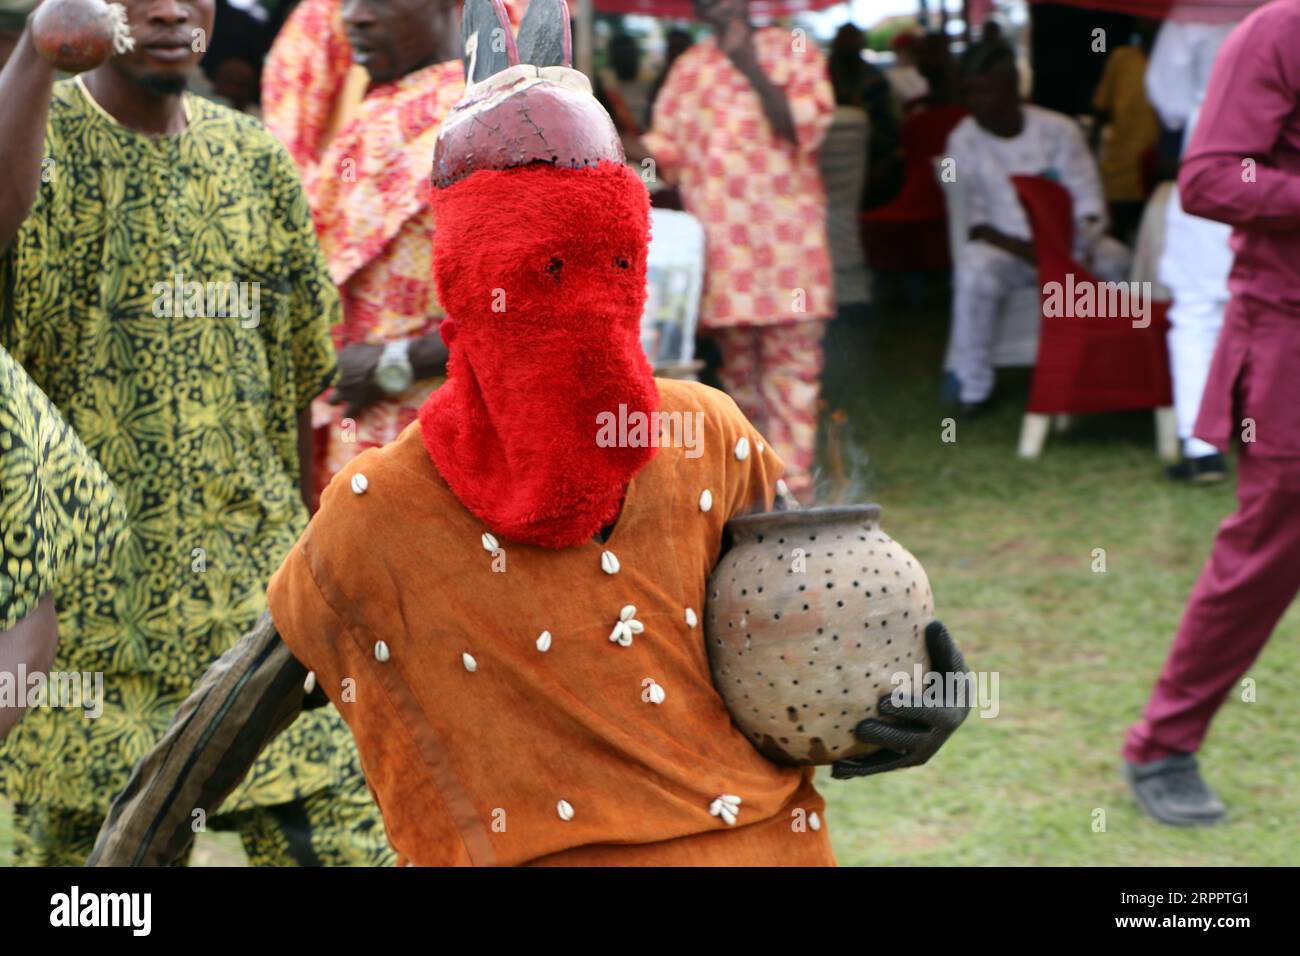 De puissantes mascarades du royaume d'Oyo se produisent au World Sango Festival qui est un festival annuel organisé parmi les Yoruba en l'honneur de Sango, une divinité du tonnerre et du feu qui était un guerrier et le troisième roi de l'Empire d'Oyo après avoir succédé à Ajaka son frère aîné. Le festival accueille des visiteurs de tout le pays et des adeptes de pays étrangers. Etat d'Oyo, Lagos, Nigeria. Banque D'Images